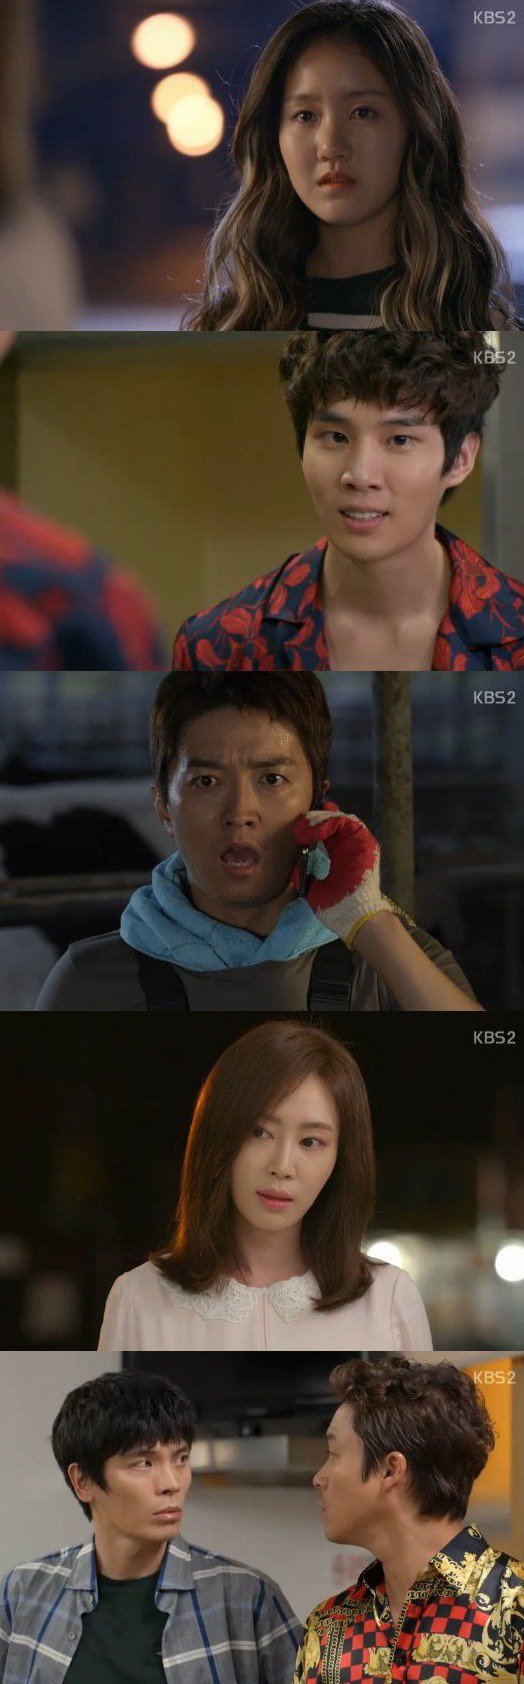 episode 1 captures for the Korean drama 'Baek-hee is Back'